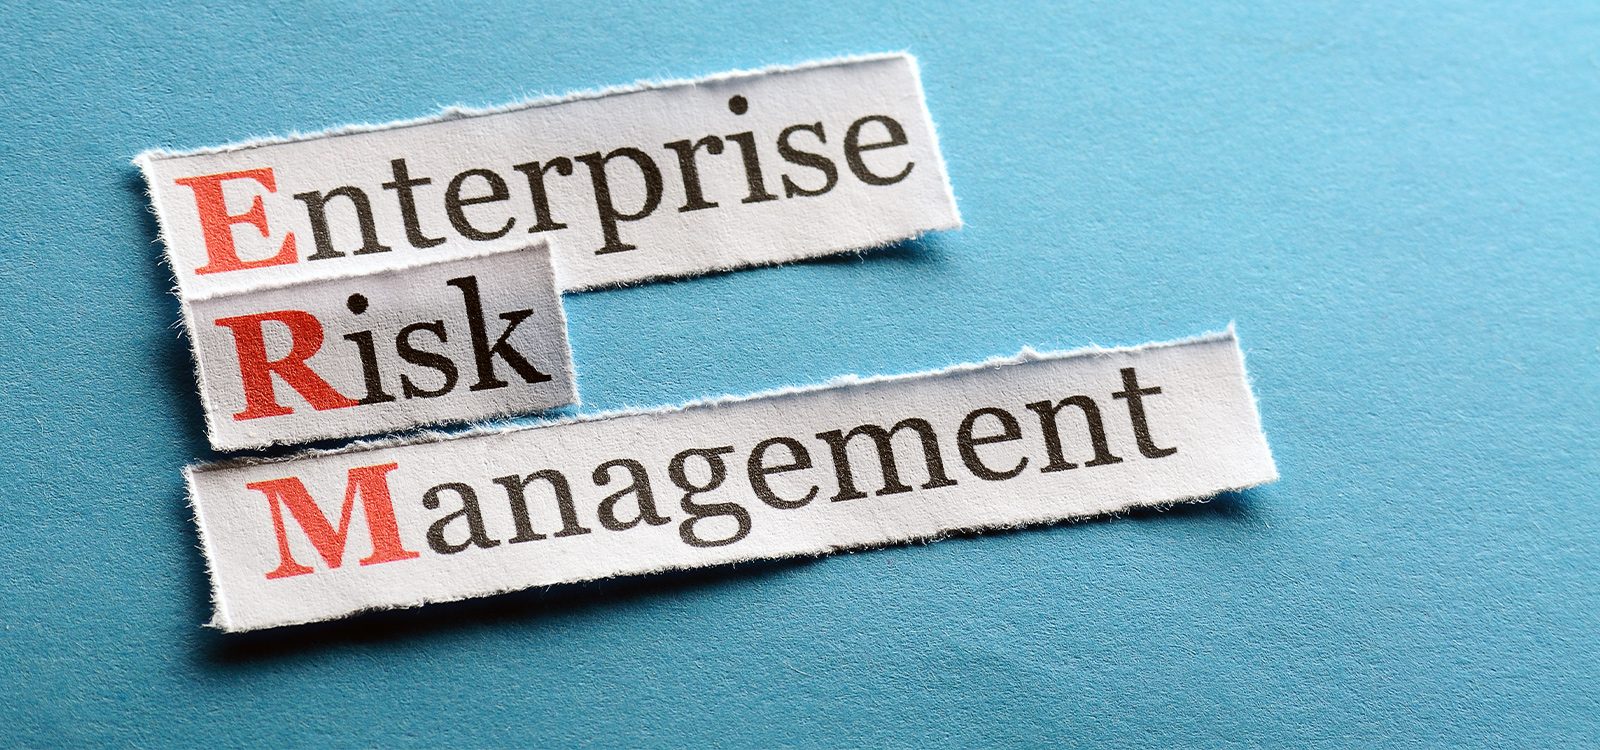 A global perspective on Enterprise Risk Management